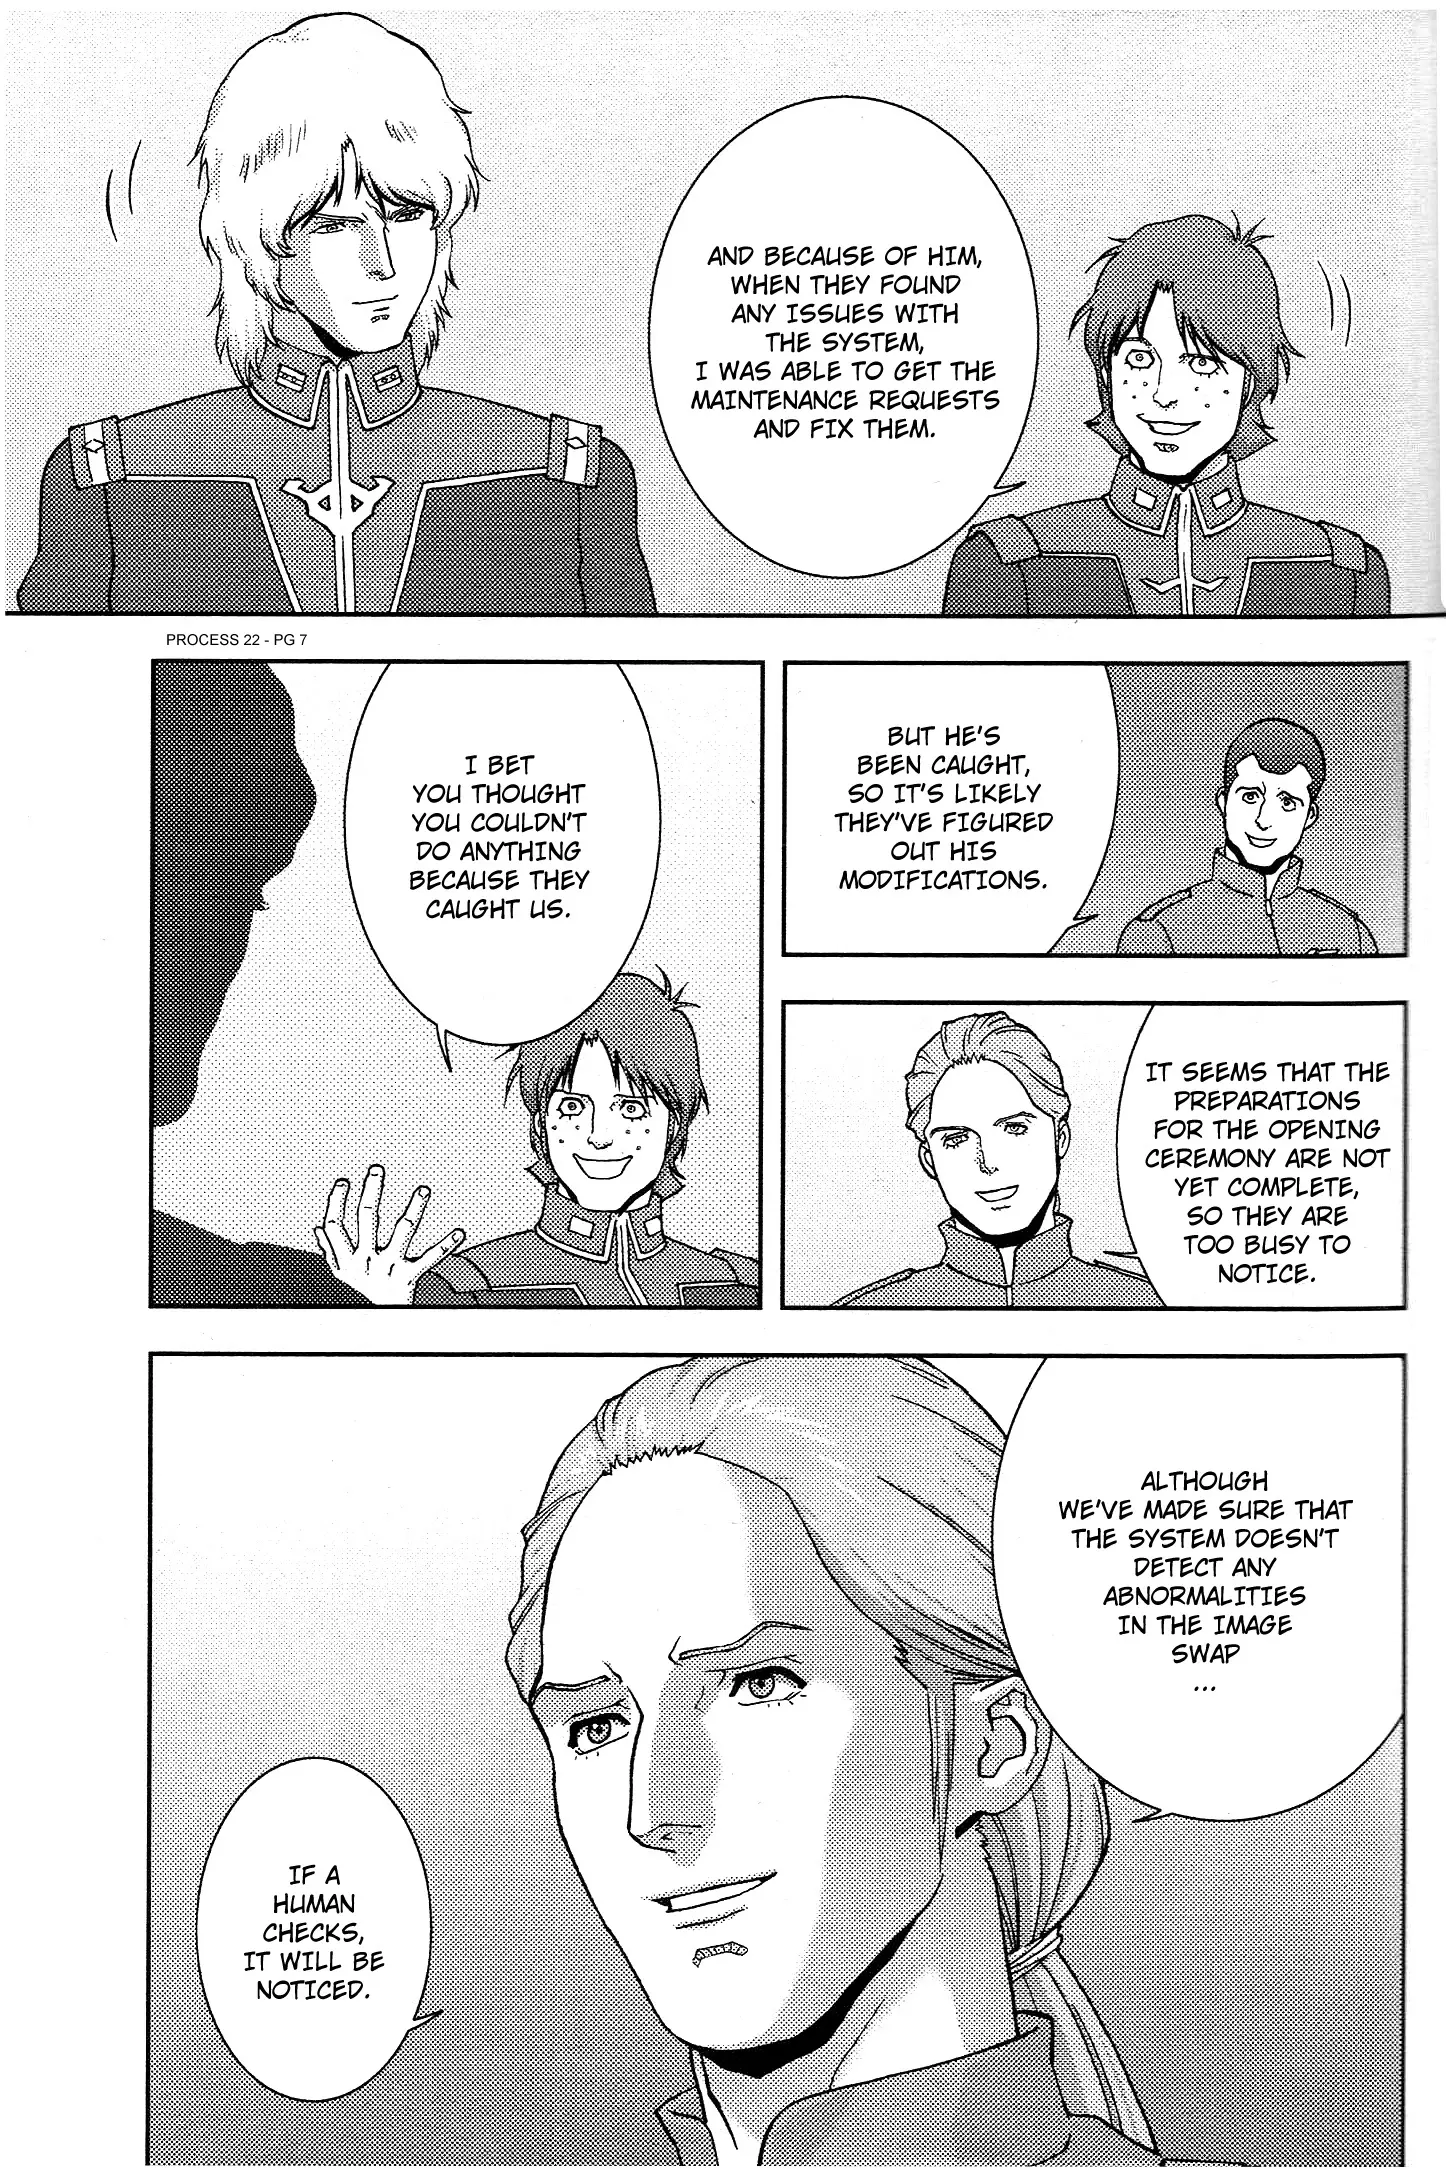 Mobile Suit Zeta Gundam - Define - 71 page 7-82f57d5b